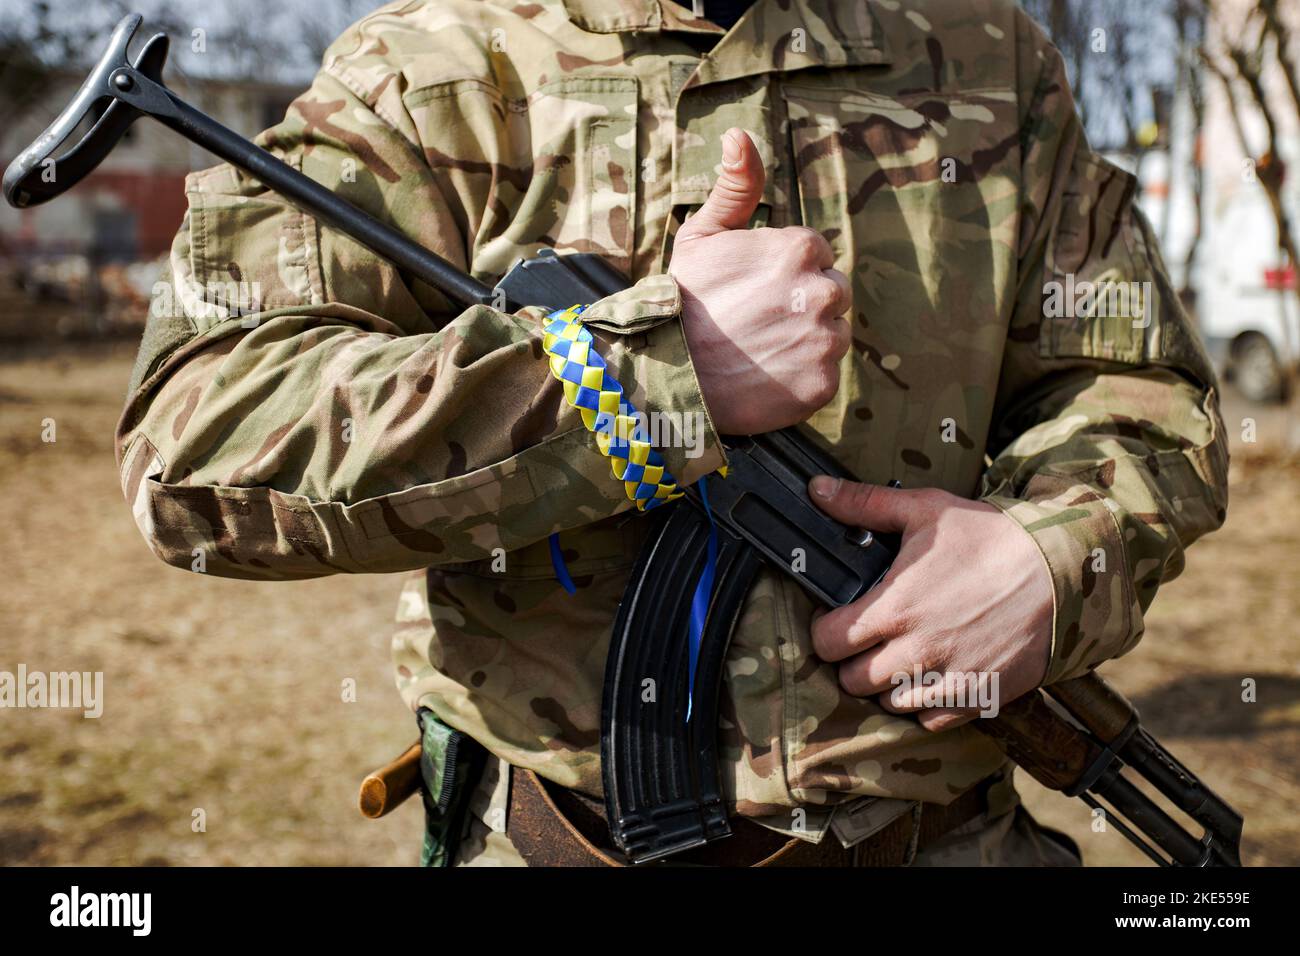 L'homme en camouflage avec un bracelet en ruban jaune et bleu sur sa main tenant le fusil automatique Kalashnikov Banque D'Images